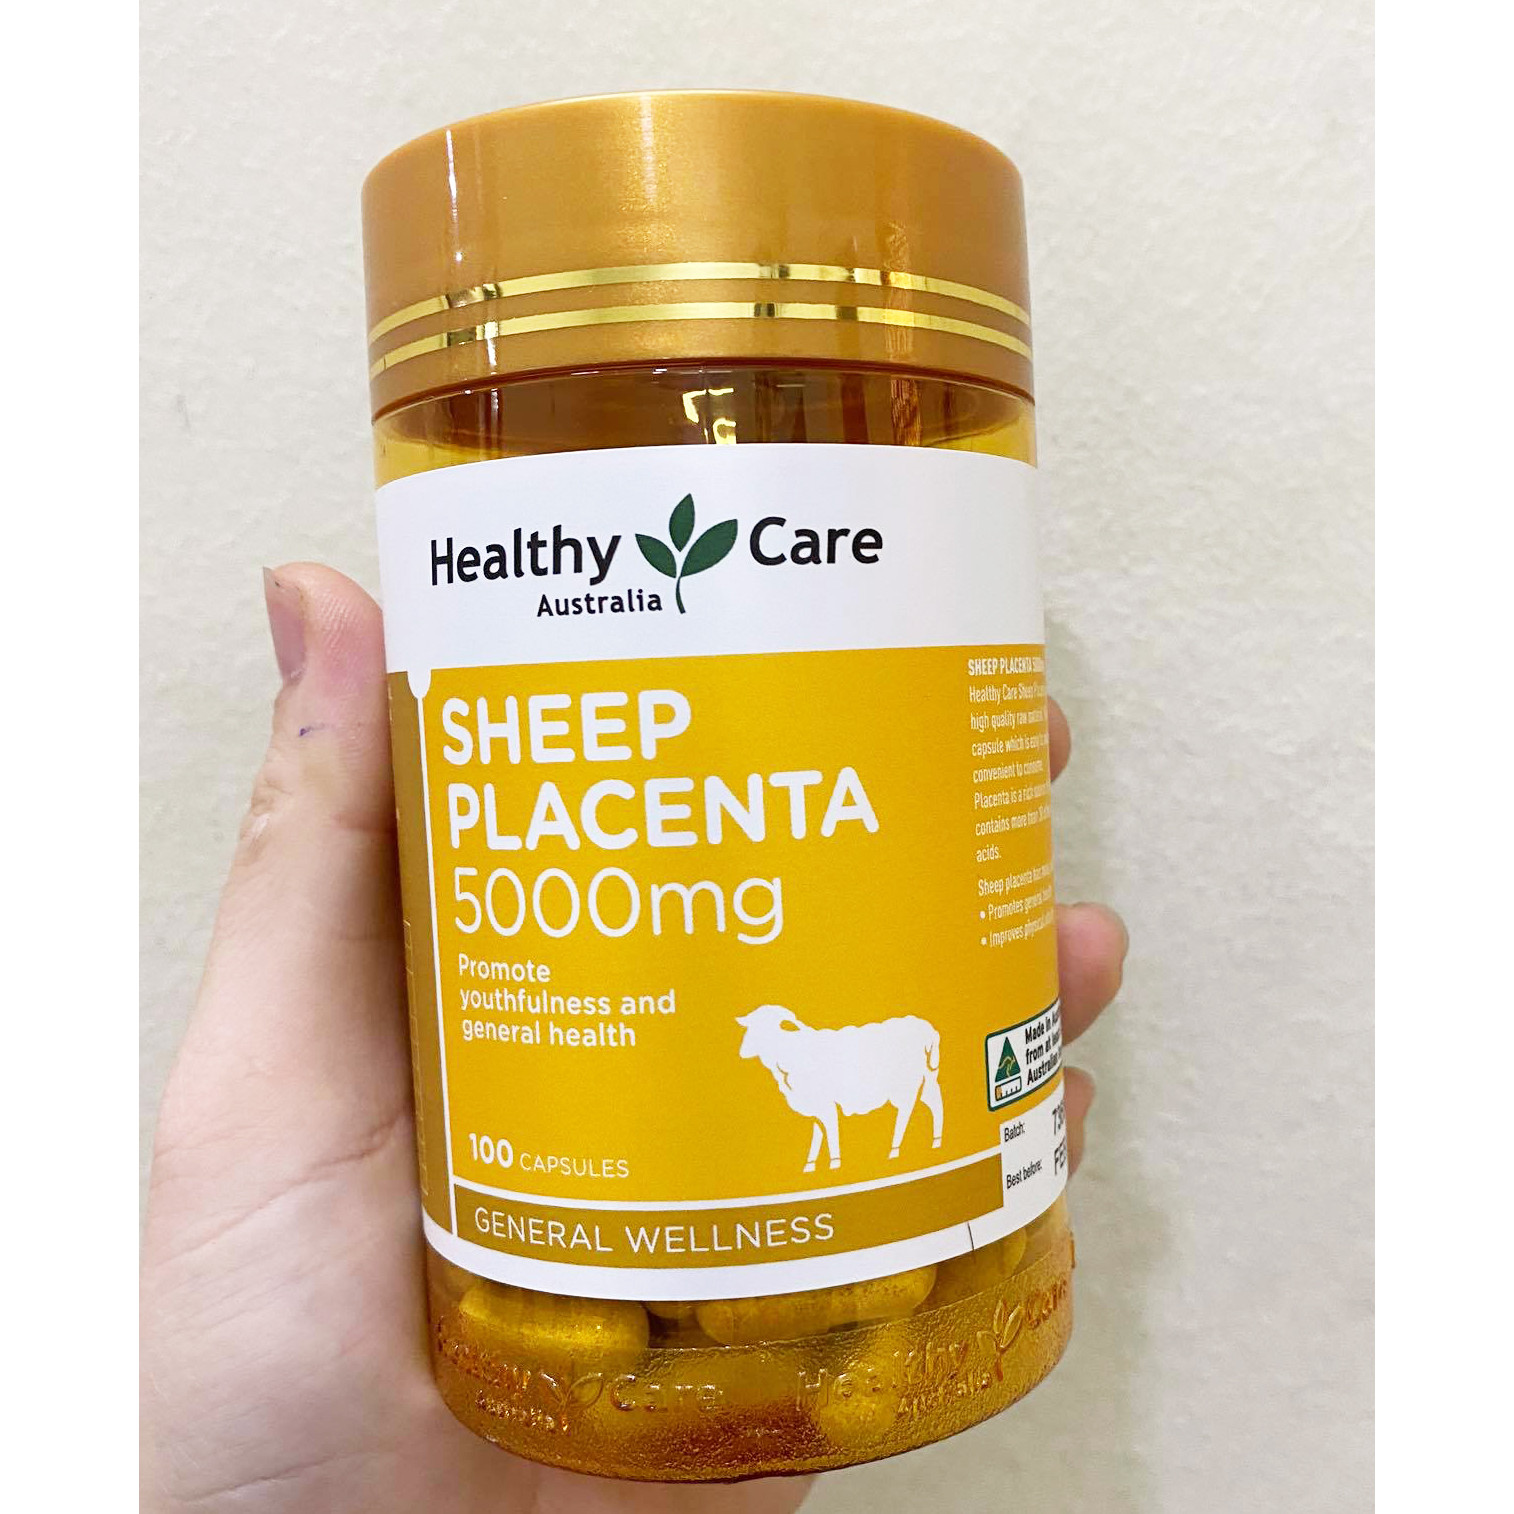 Viên uống nhau thai cừu Healthy Care Sheep Placenta chính hãng Úc giảm nám, tàn nhang, làm đẹp da